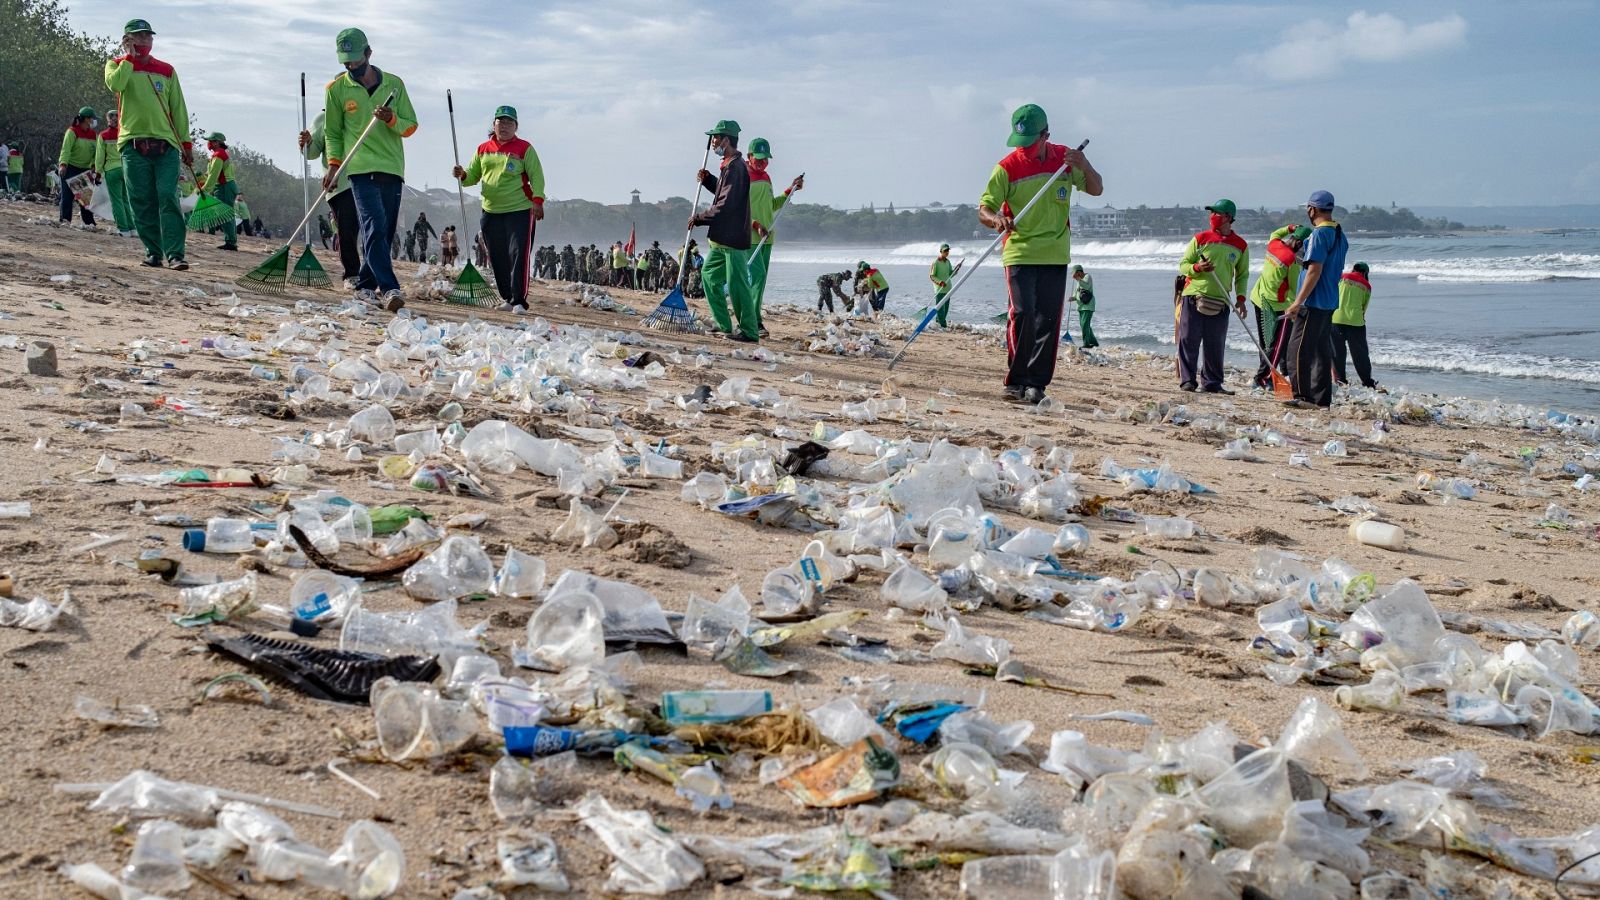 Voluntarios recogen restos de plásticos en una playa de Bali, Indonesia